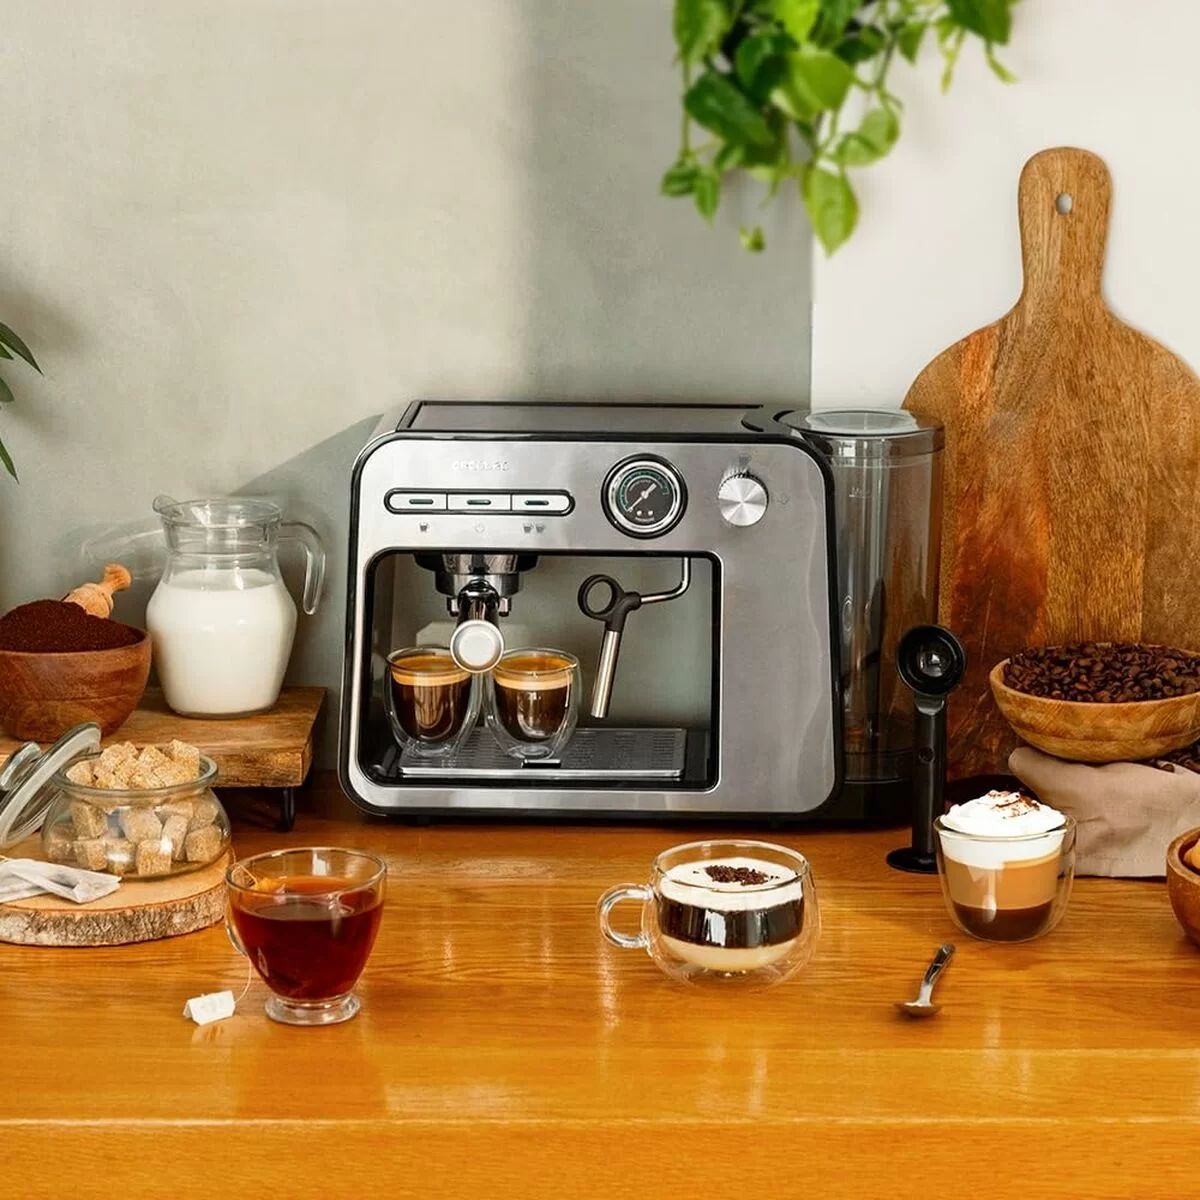 Cecotec Espresso Coffee Machine Power Espresso 20 Matic